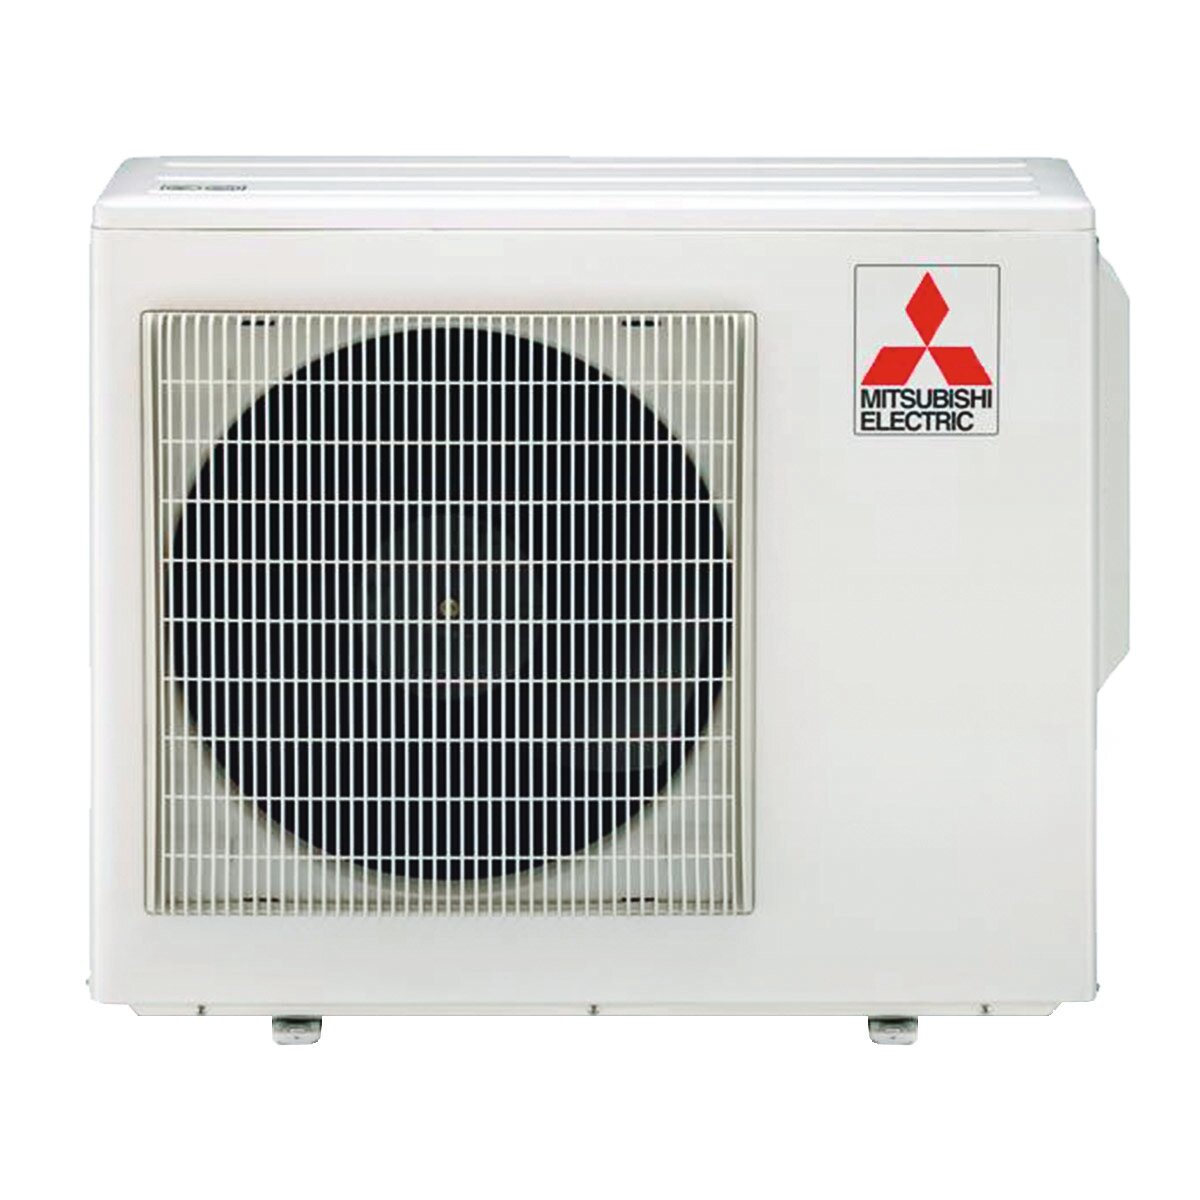 Mitsubishi Electric Klimaanlage AY-Serie Dual Split 18000+18000 BTU Inverter A++ WLAN-Außeneinheit 5,4 kW